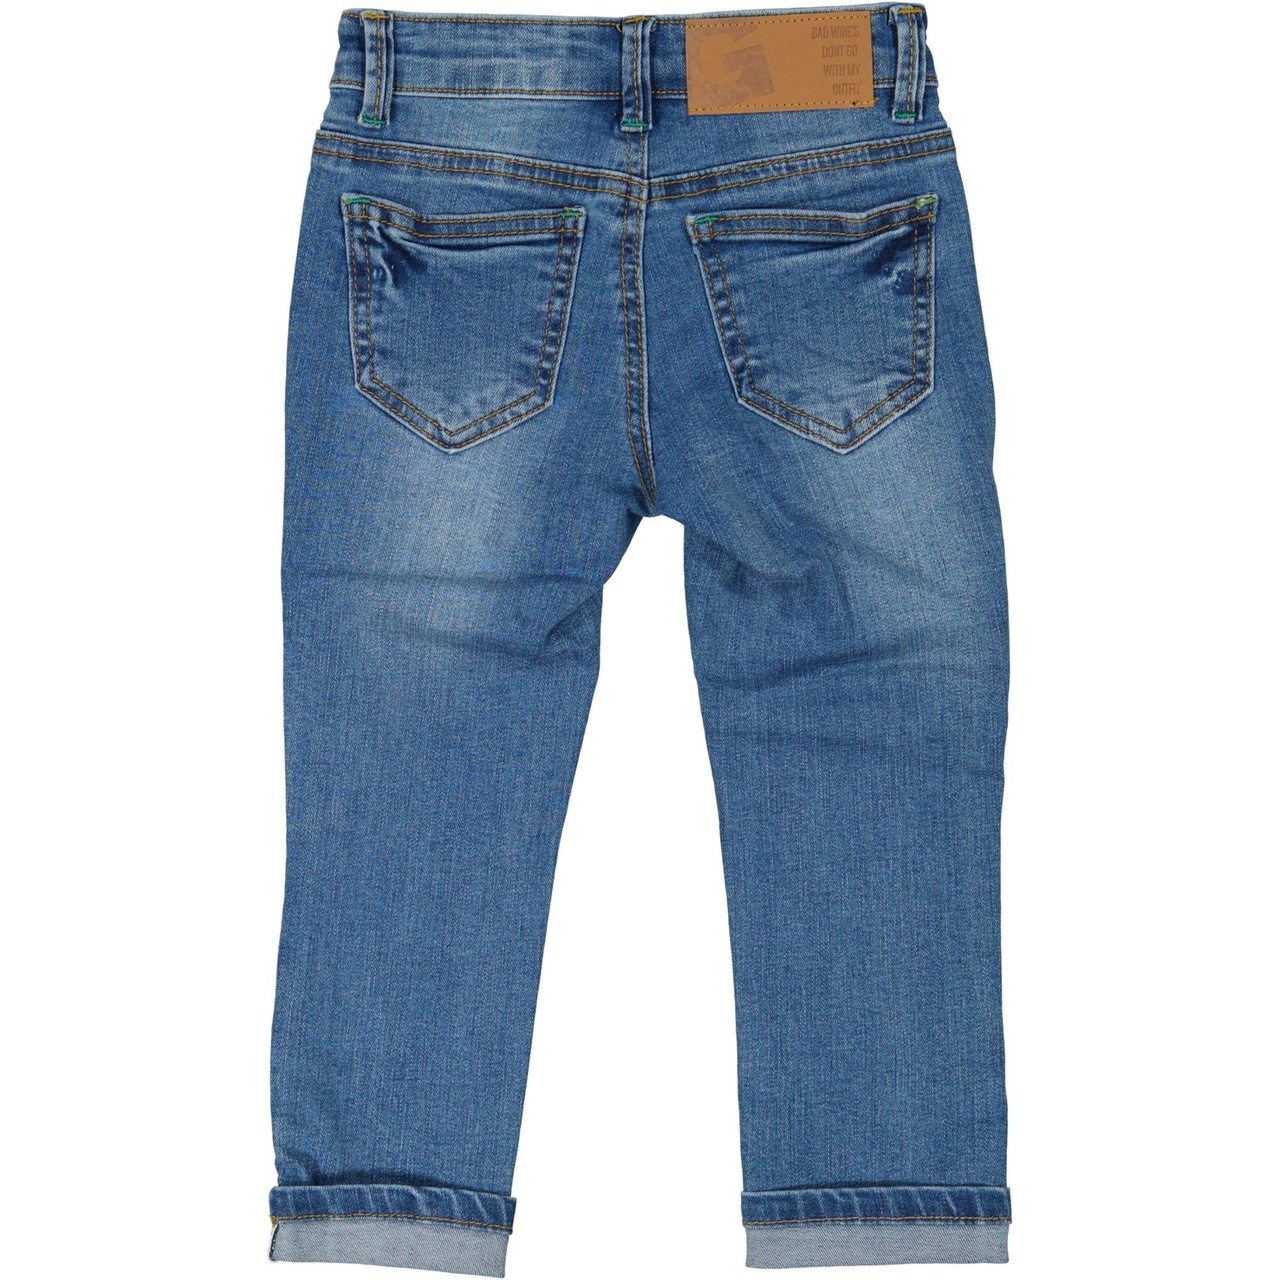 Unisex 5-pocket jeans Denim blue wash 86/92